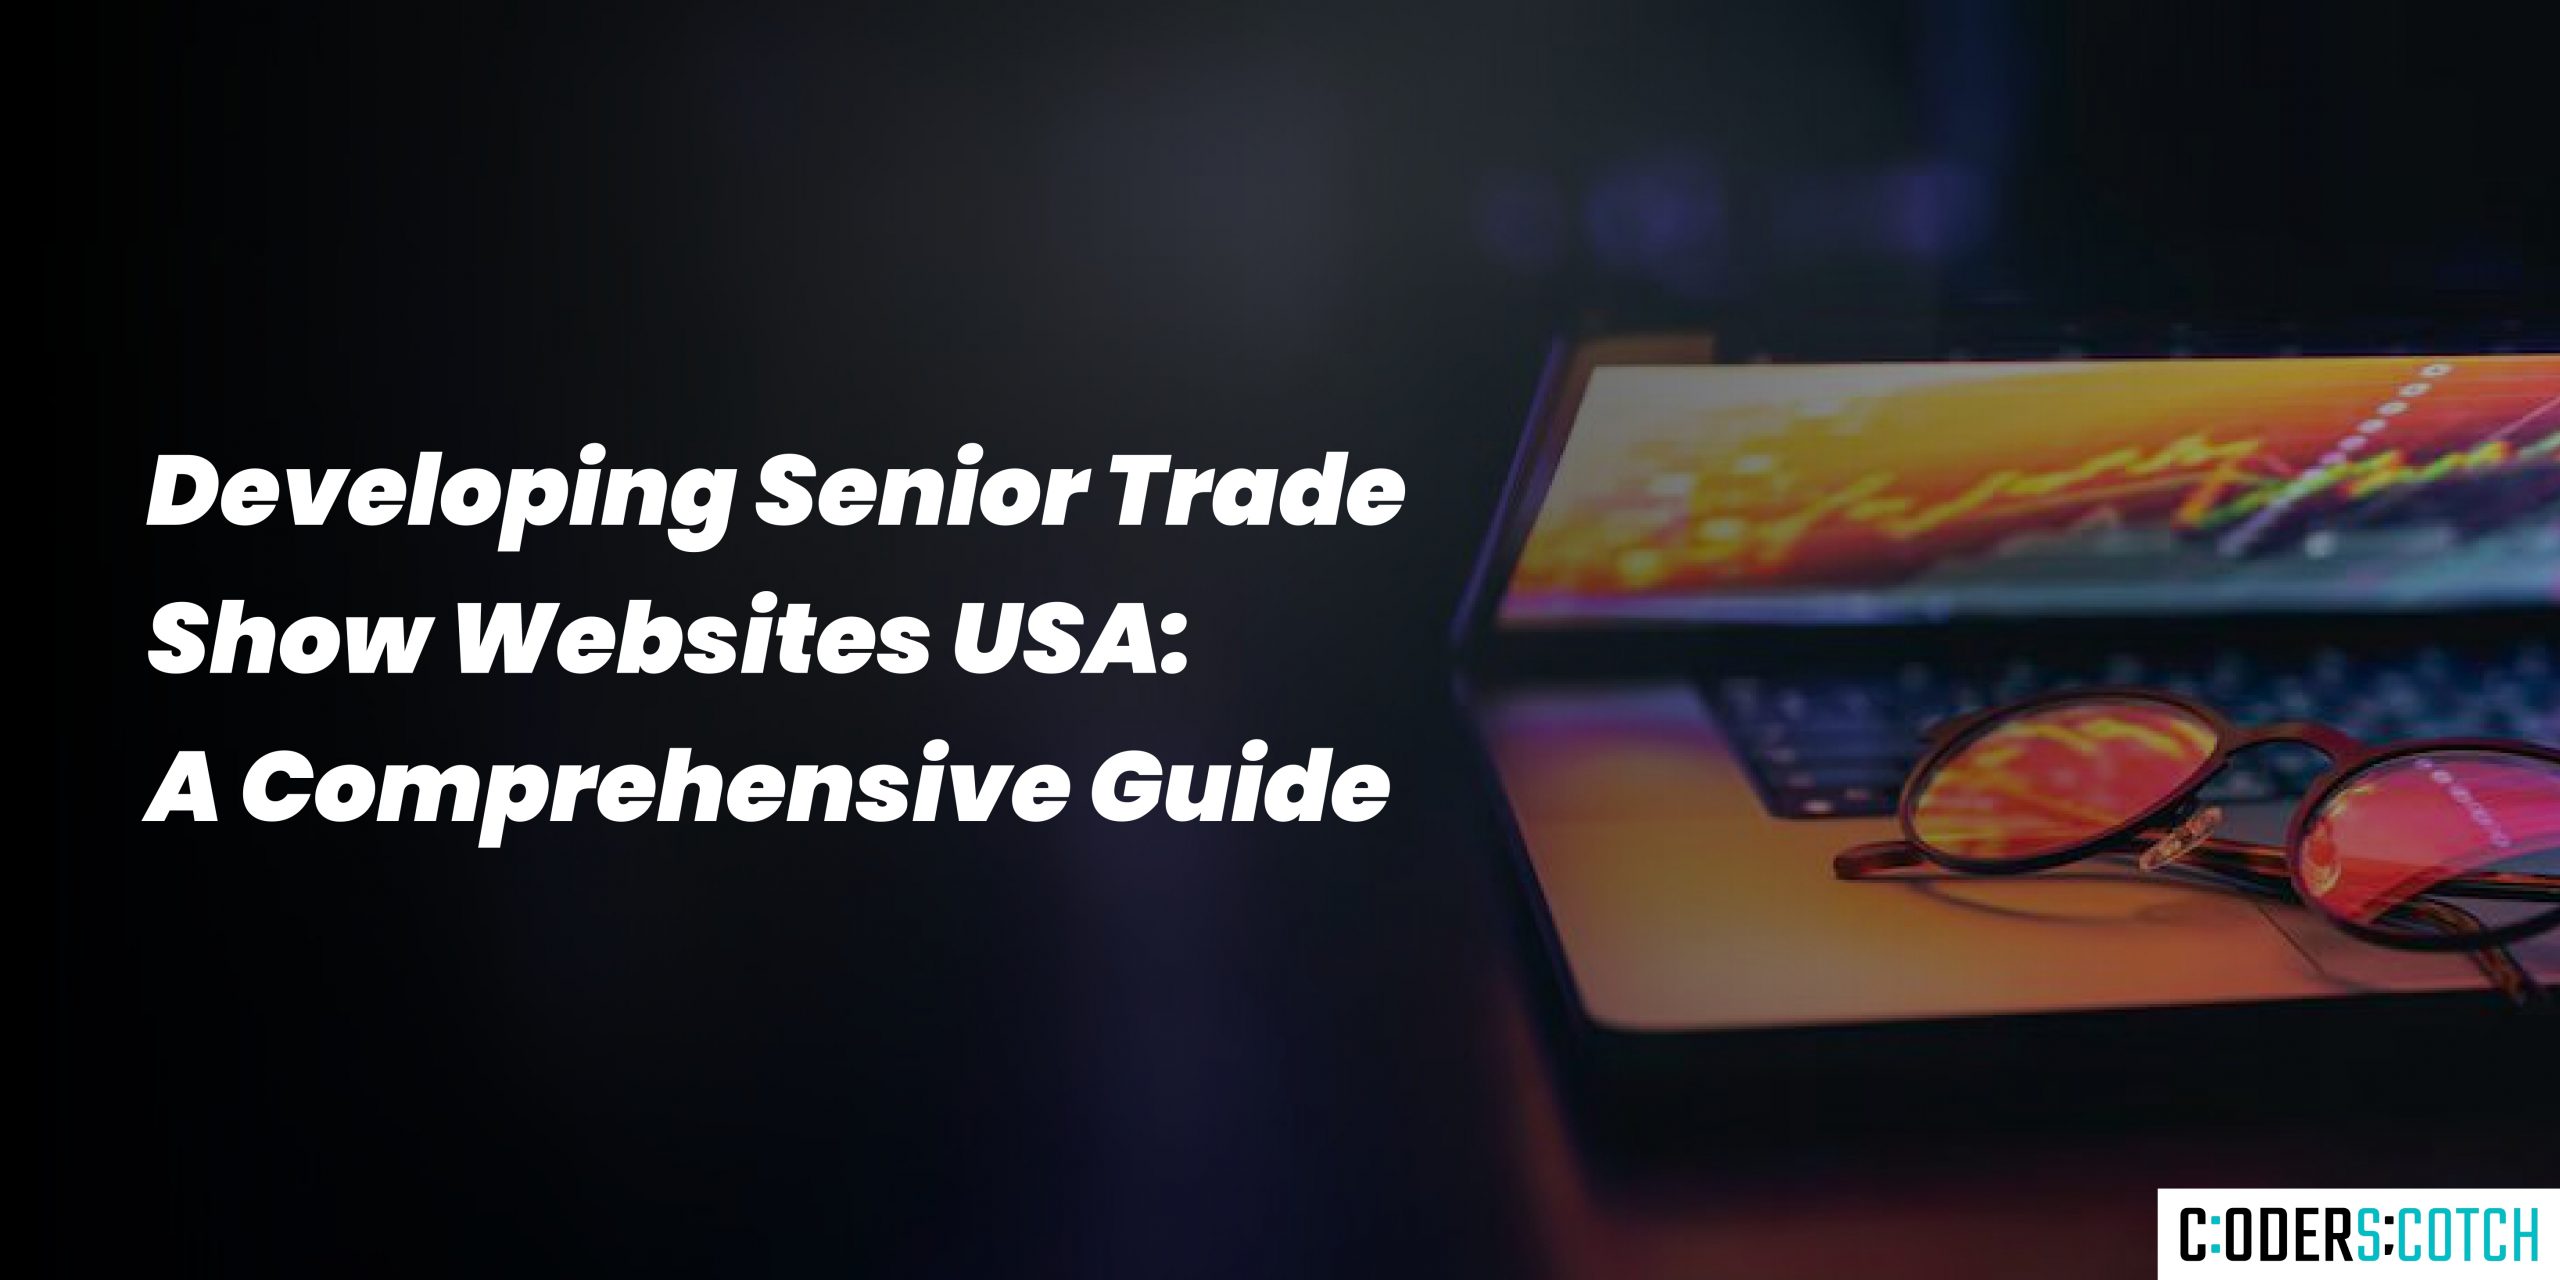 Developing Senior Trade Show Websites USA: A Comprehensive Guide